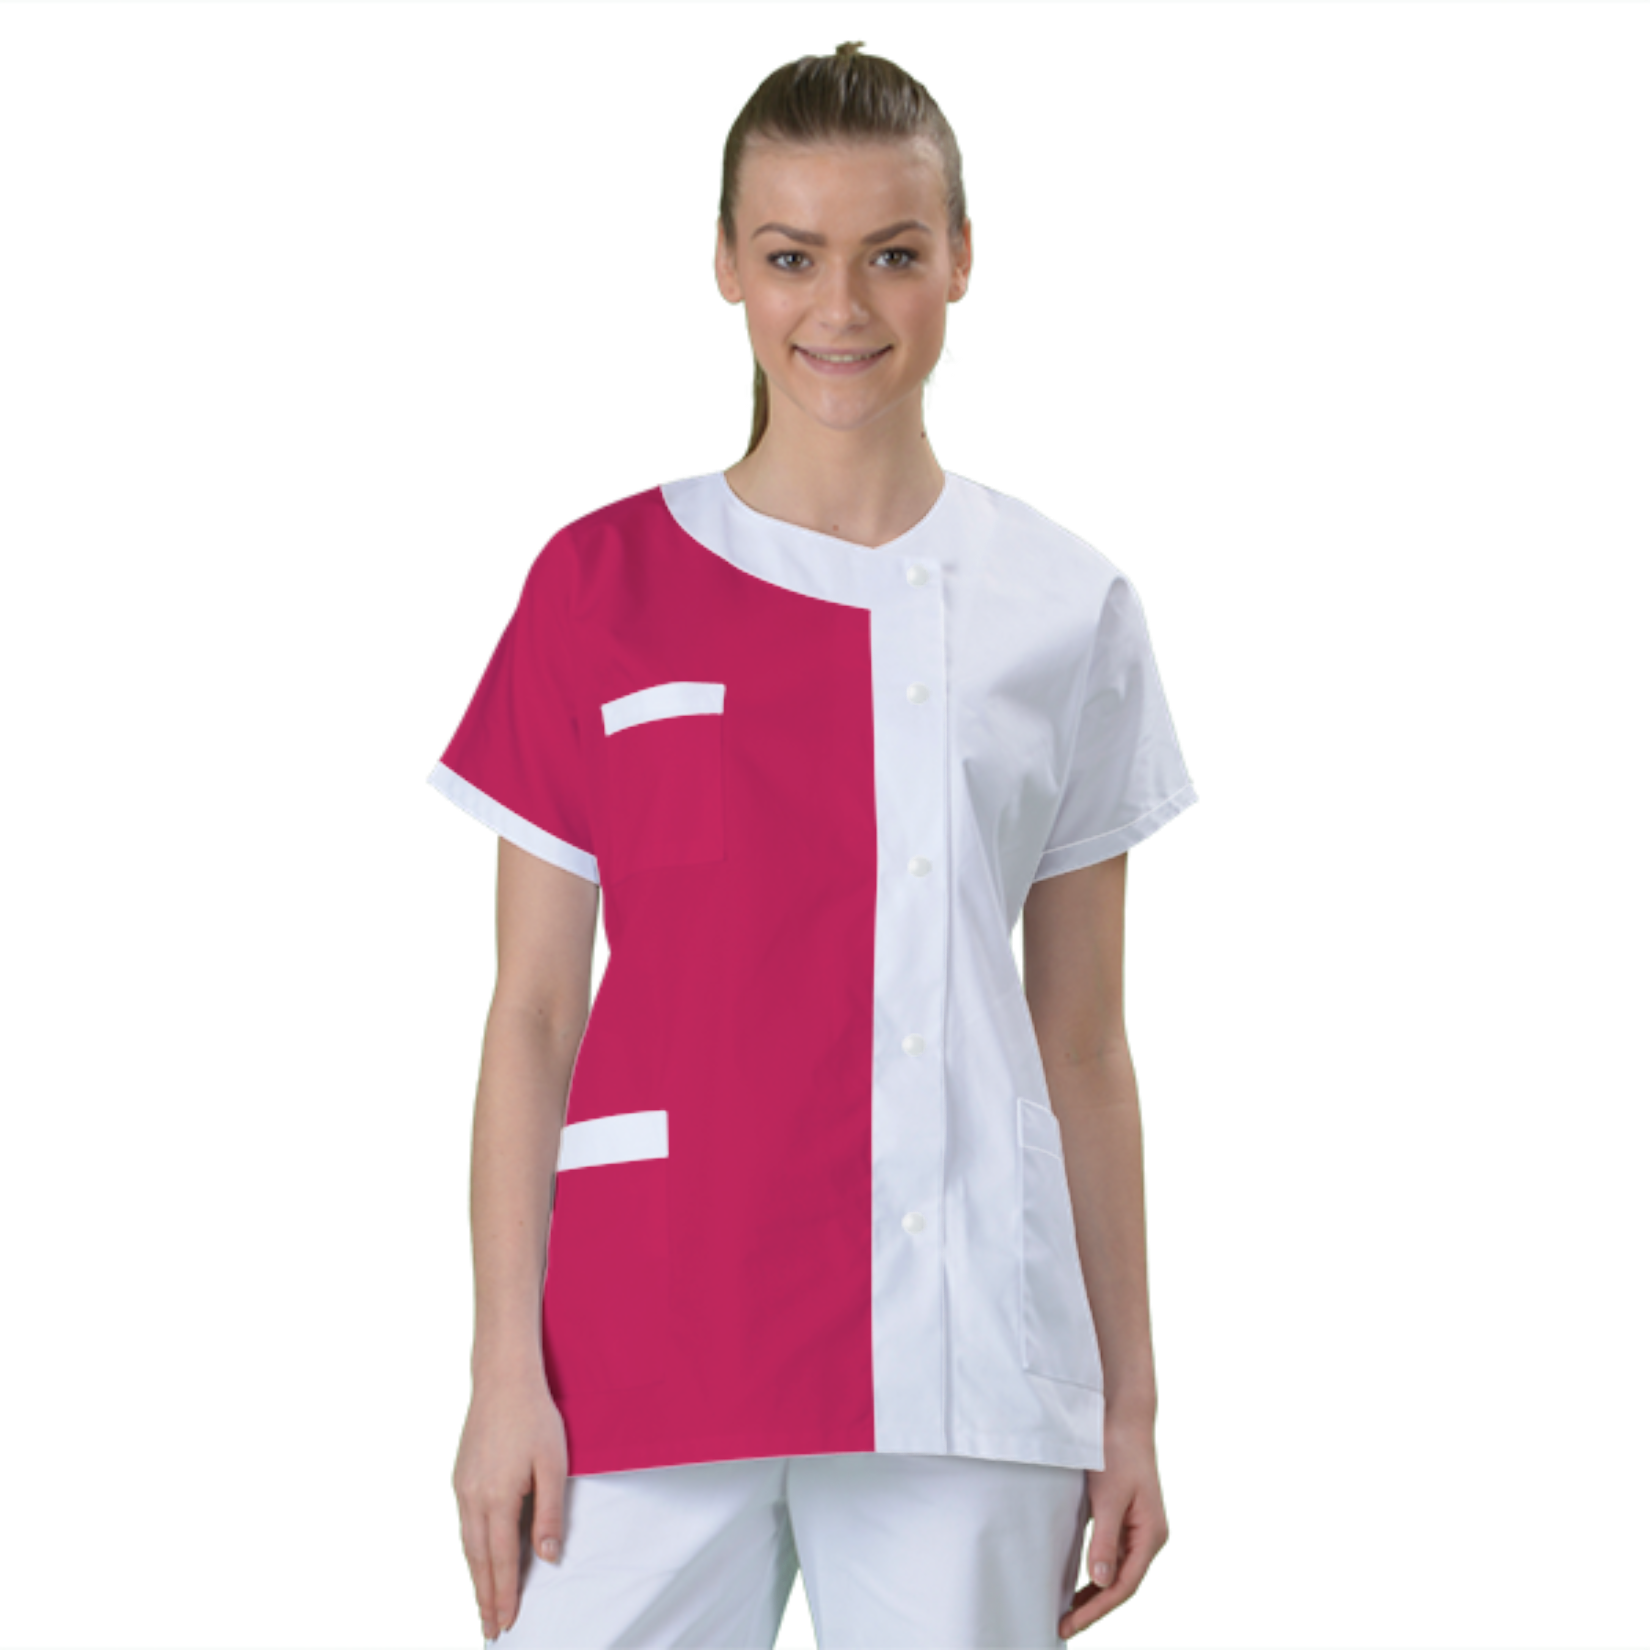 blouse-medicale-col-carre-a-personnaliser acheté - par Sophie  - le 16-05-2021